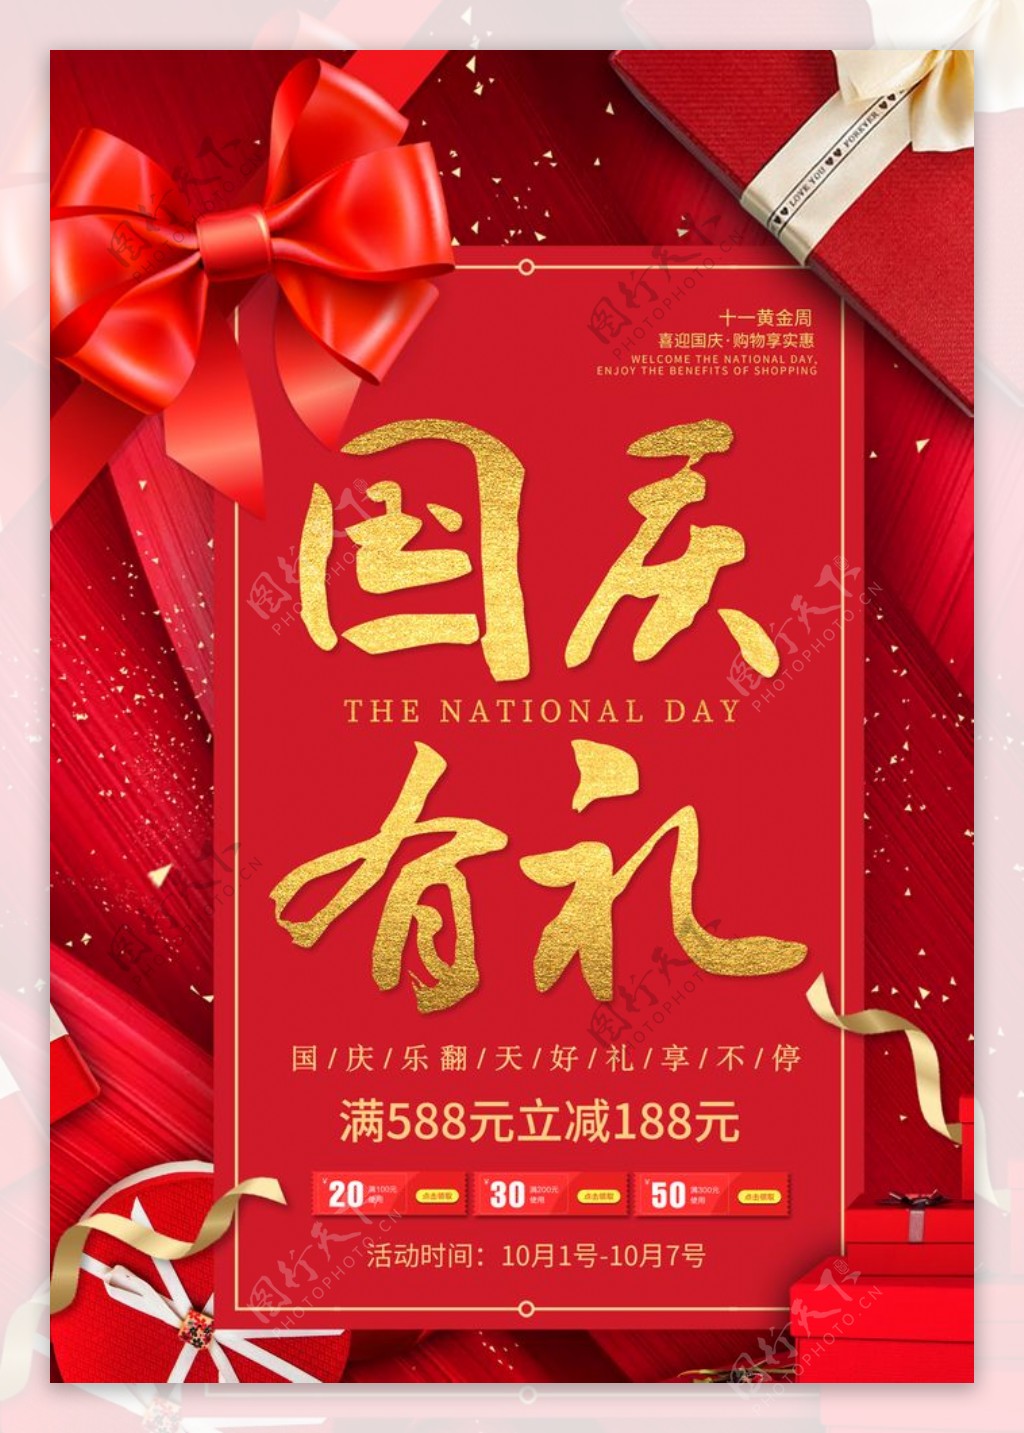 国庆节日传统活动宣传海报素材